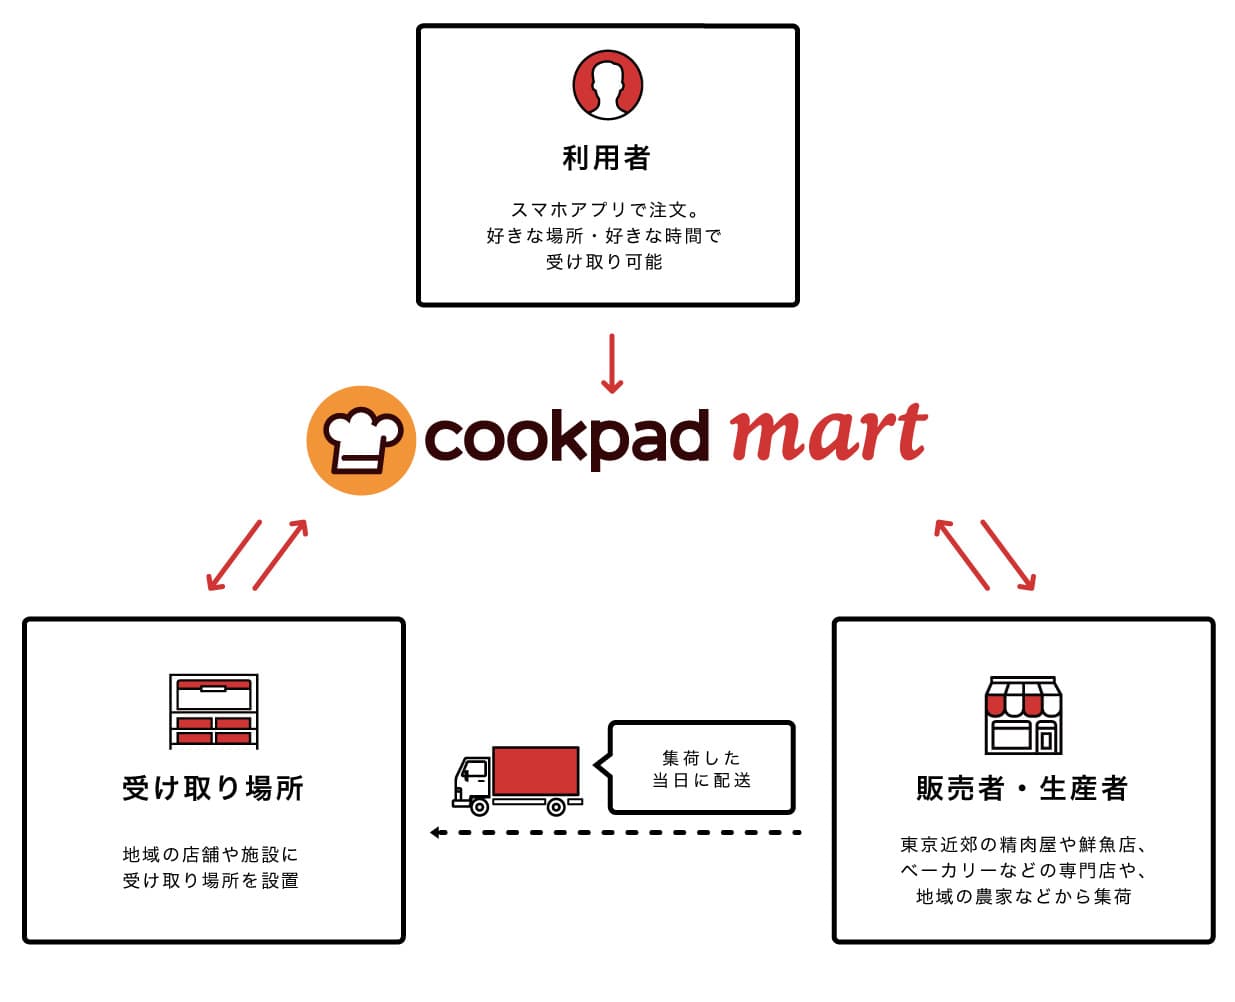 1品から注文可能・送料無料のネットスーパー「クックパッドマート」が2018年夏オープン